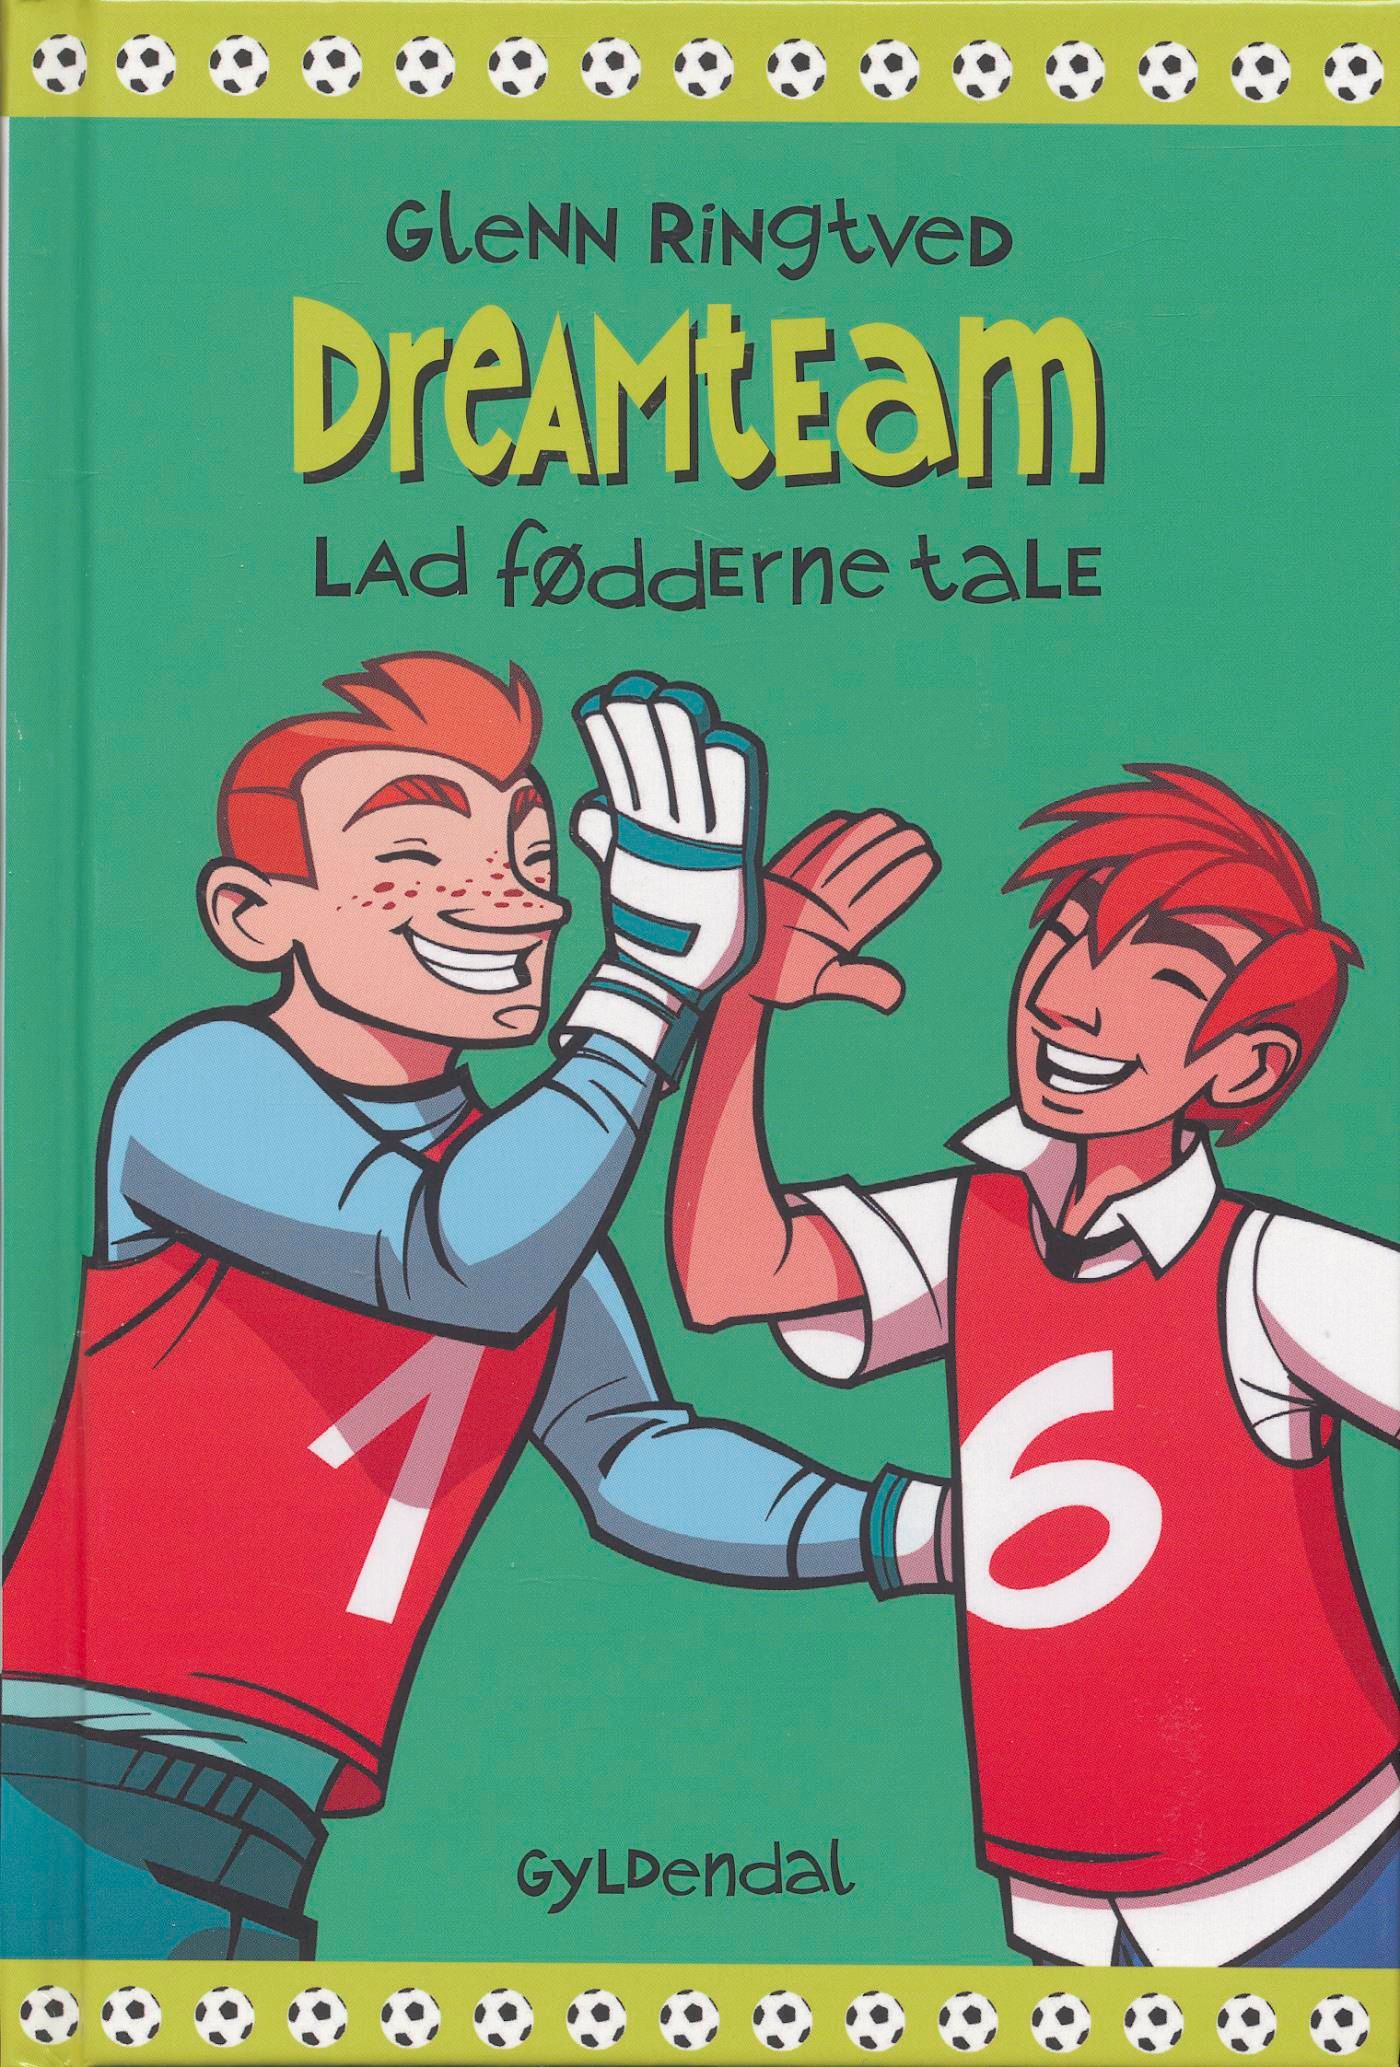 Lad fødderne tale (Dreamteam 2), e-bog af Glenn Ringtved